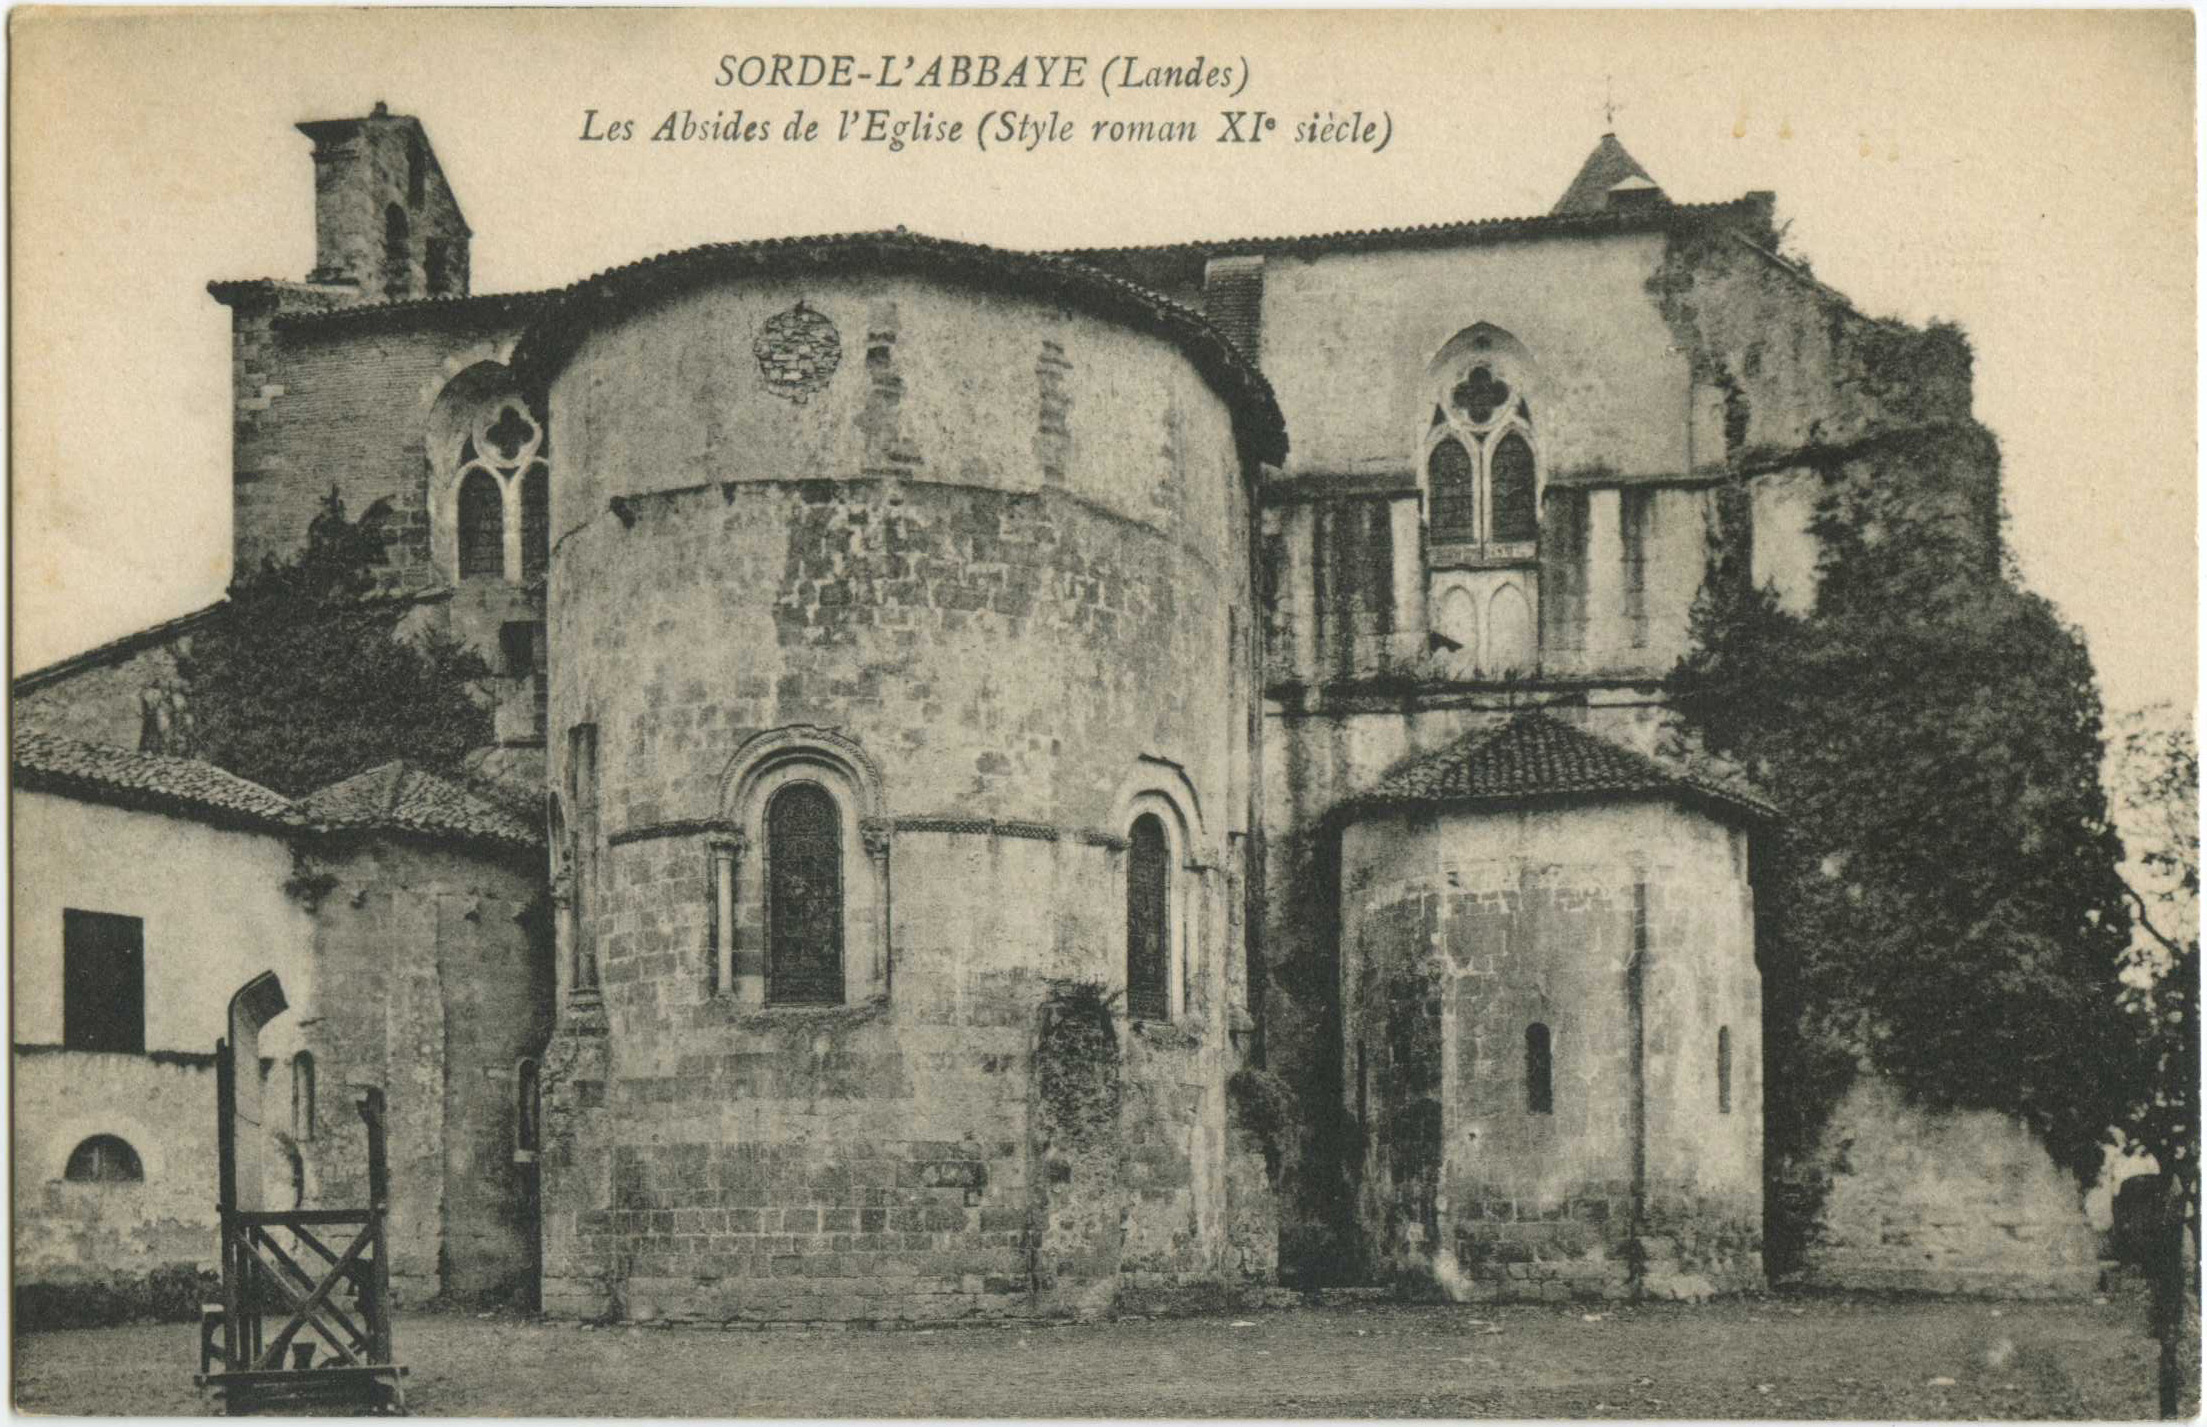 Sorde-l'Abbaye - Les Absides de l'Eglise (Style roman XI<sup>e</sup> siècle)